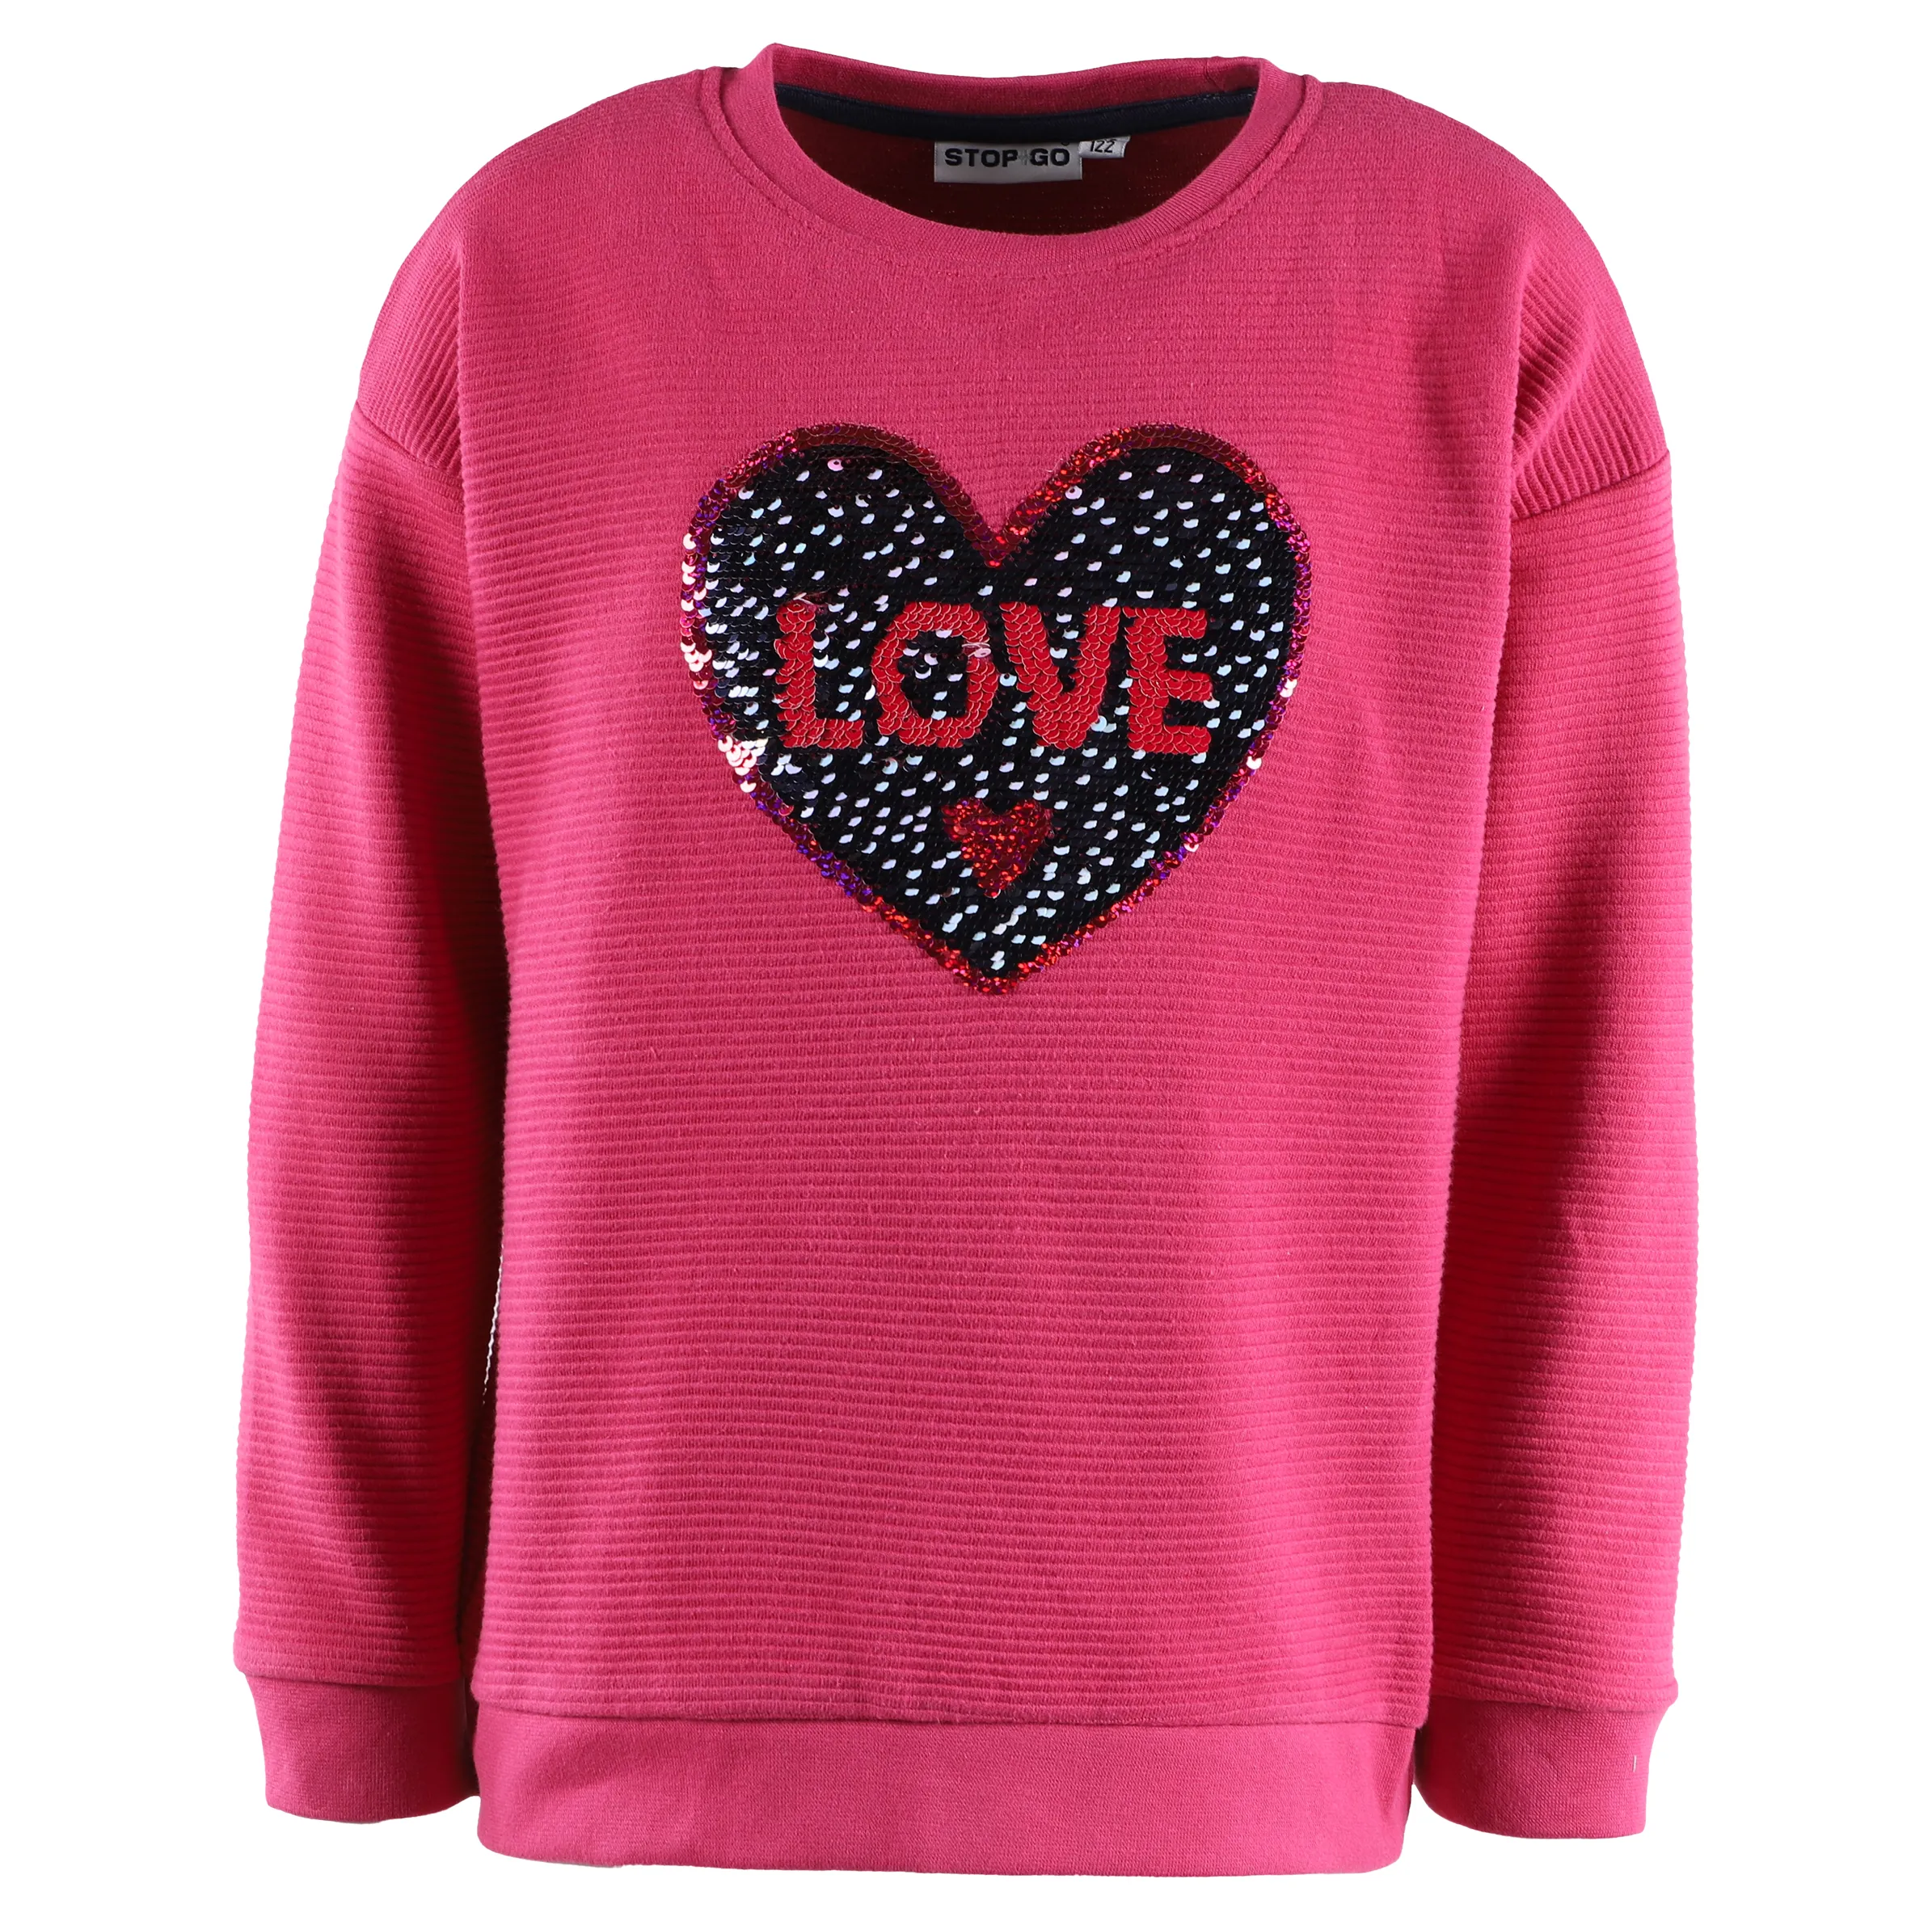 Stop + Go KM Sweater in pink mit Wendepailletten Herz Pink 881604 CRANBERRY 1